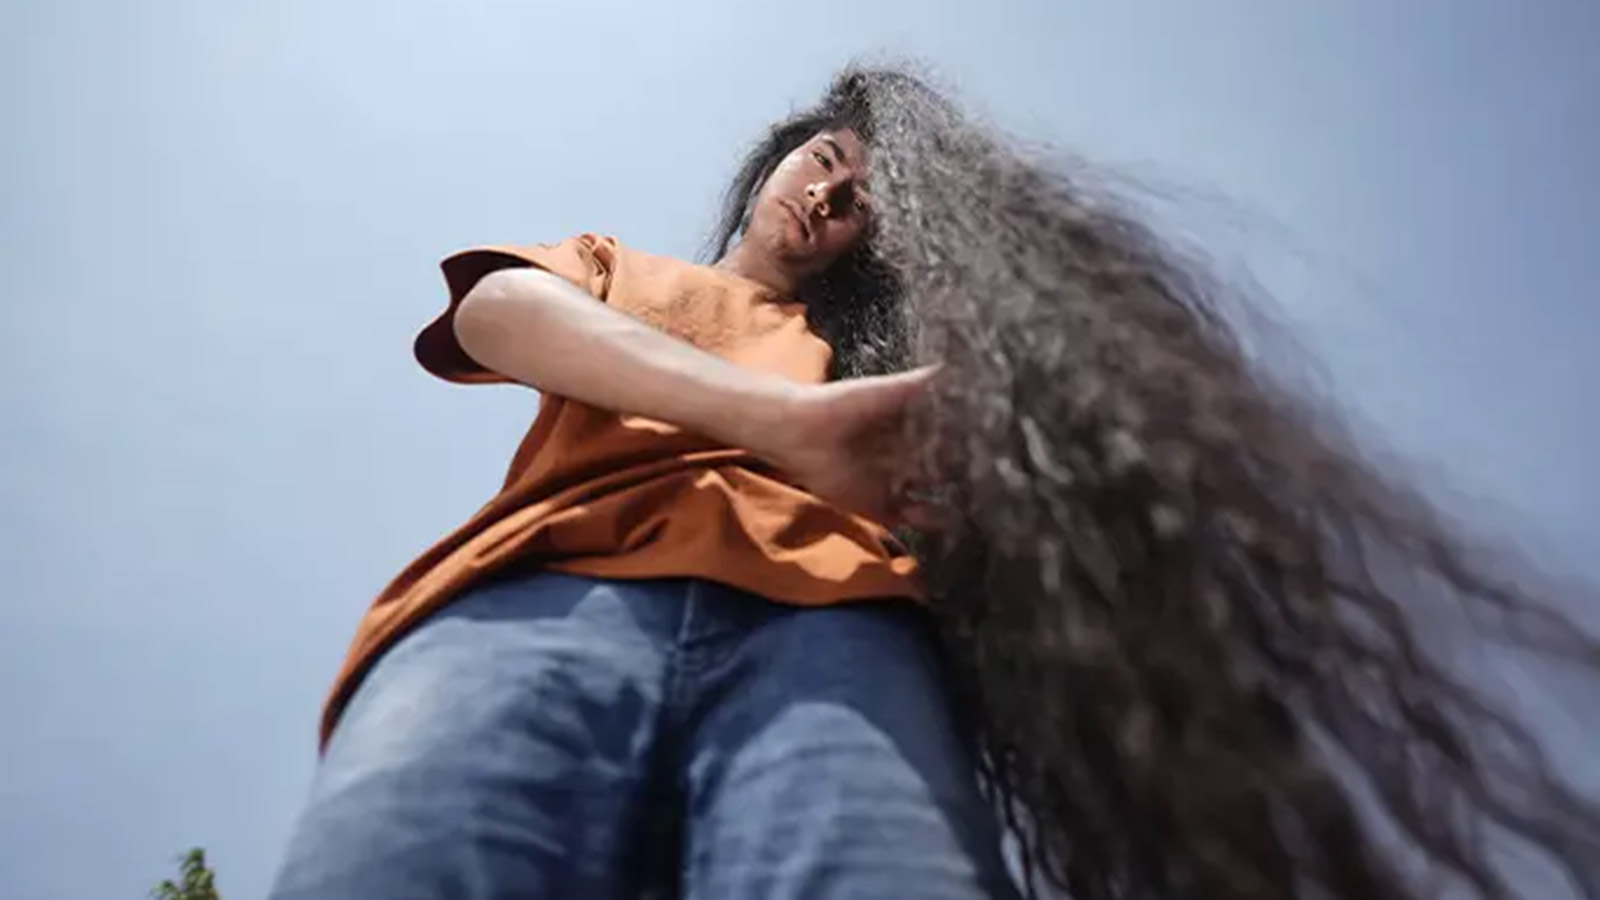 Волосы дыбом: женщина показала селфи за мгновение до катастрофы (фото)